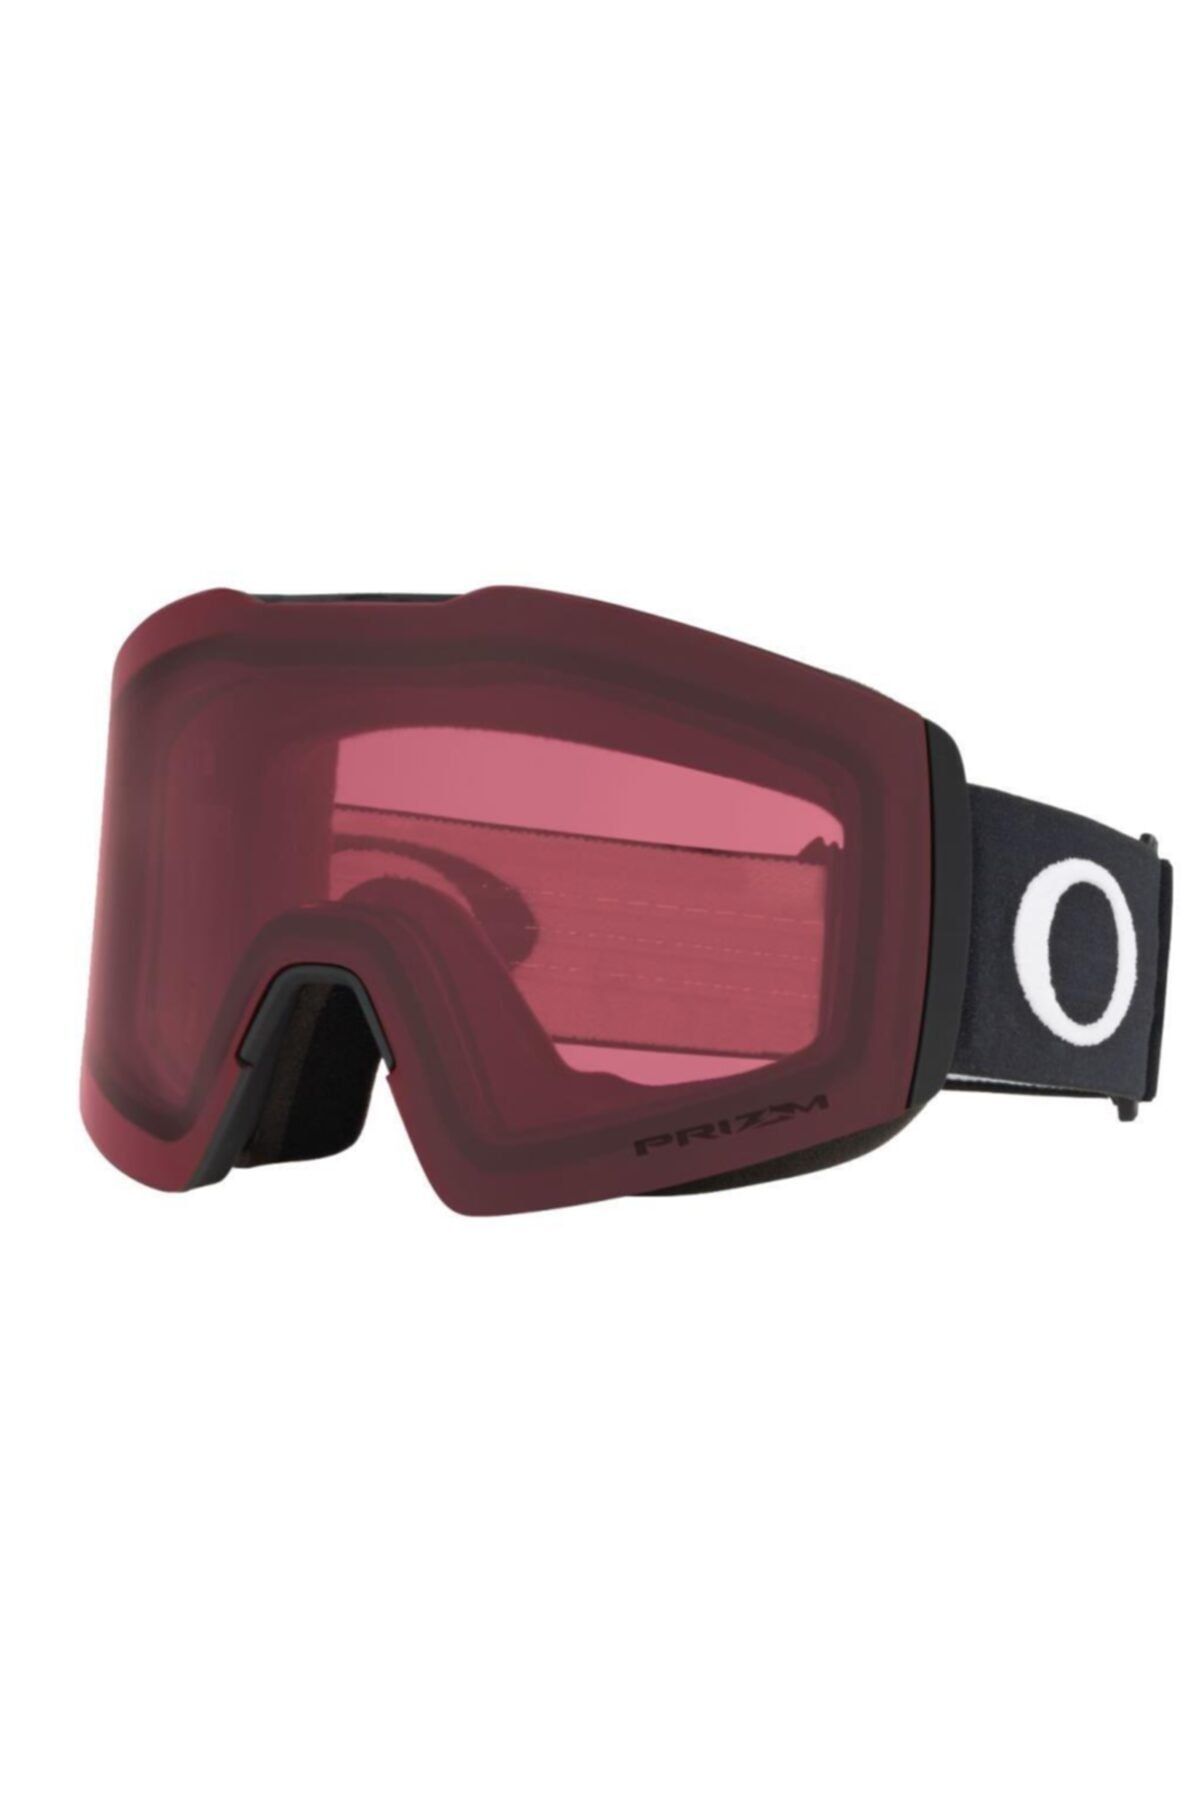 Oakley Oo7099 Fall Lıne Xl 34 Prızm Kayak Gözlüğü